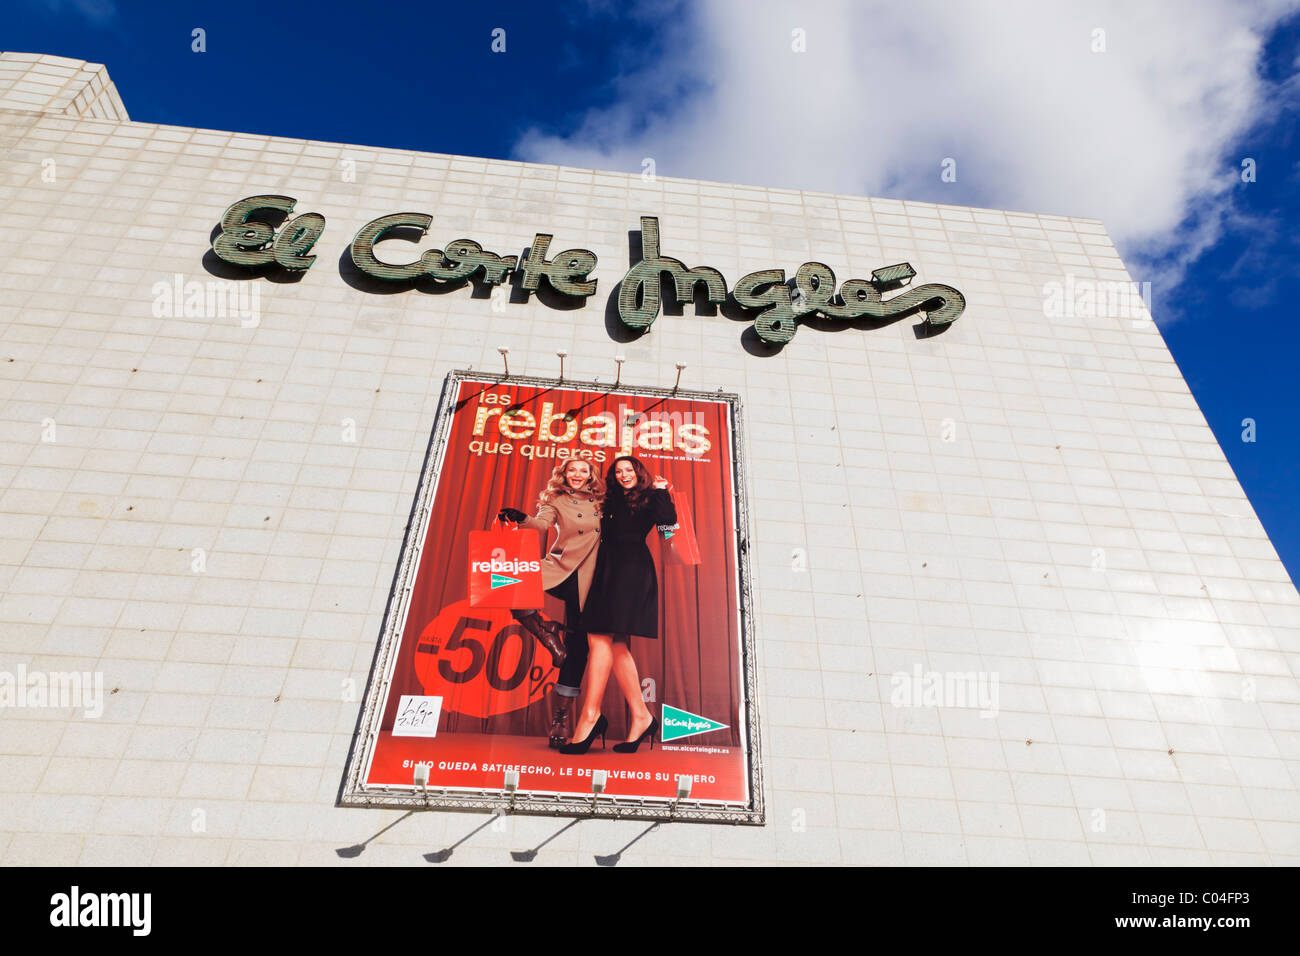 Publicité pour les ventes dans la région de El Corte Ingles, département de la province de Malaga, Malaga, Espagne. Banque D'Images